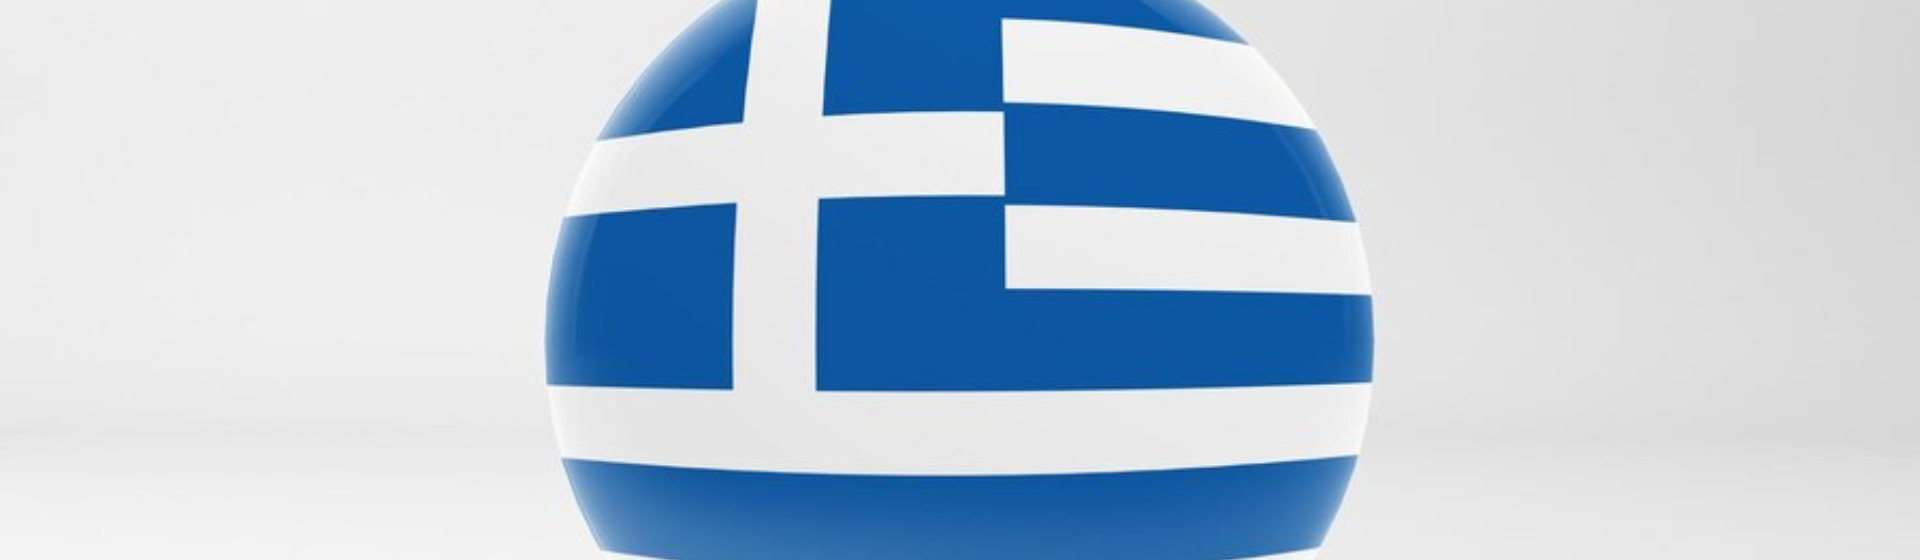 Sport Transparency Index Leaflet – Greek header